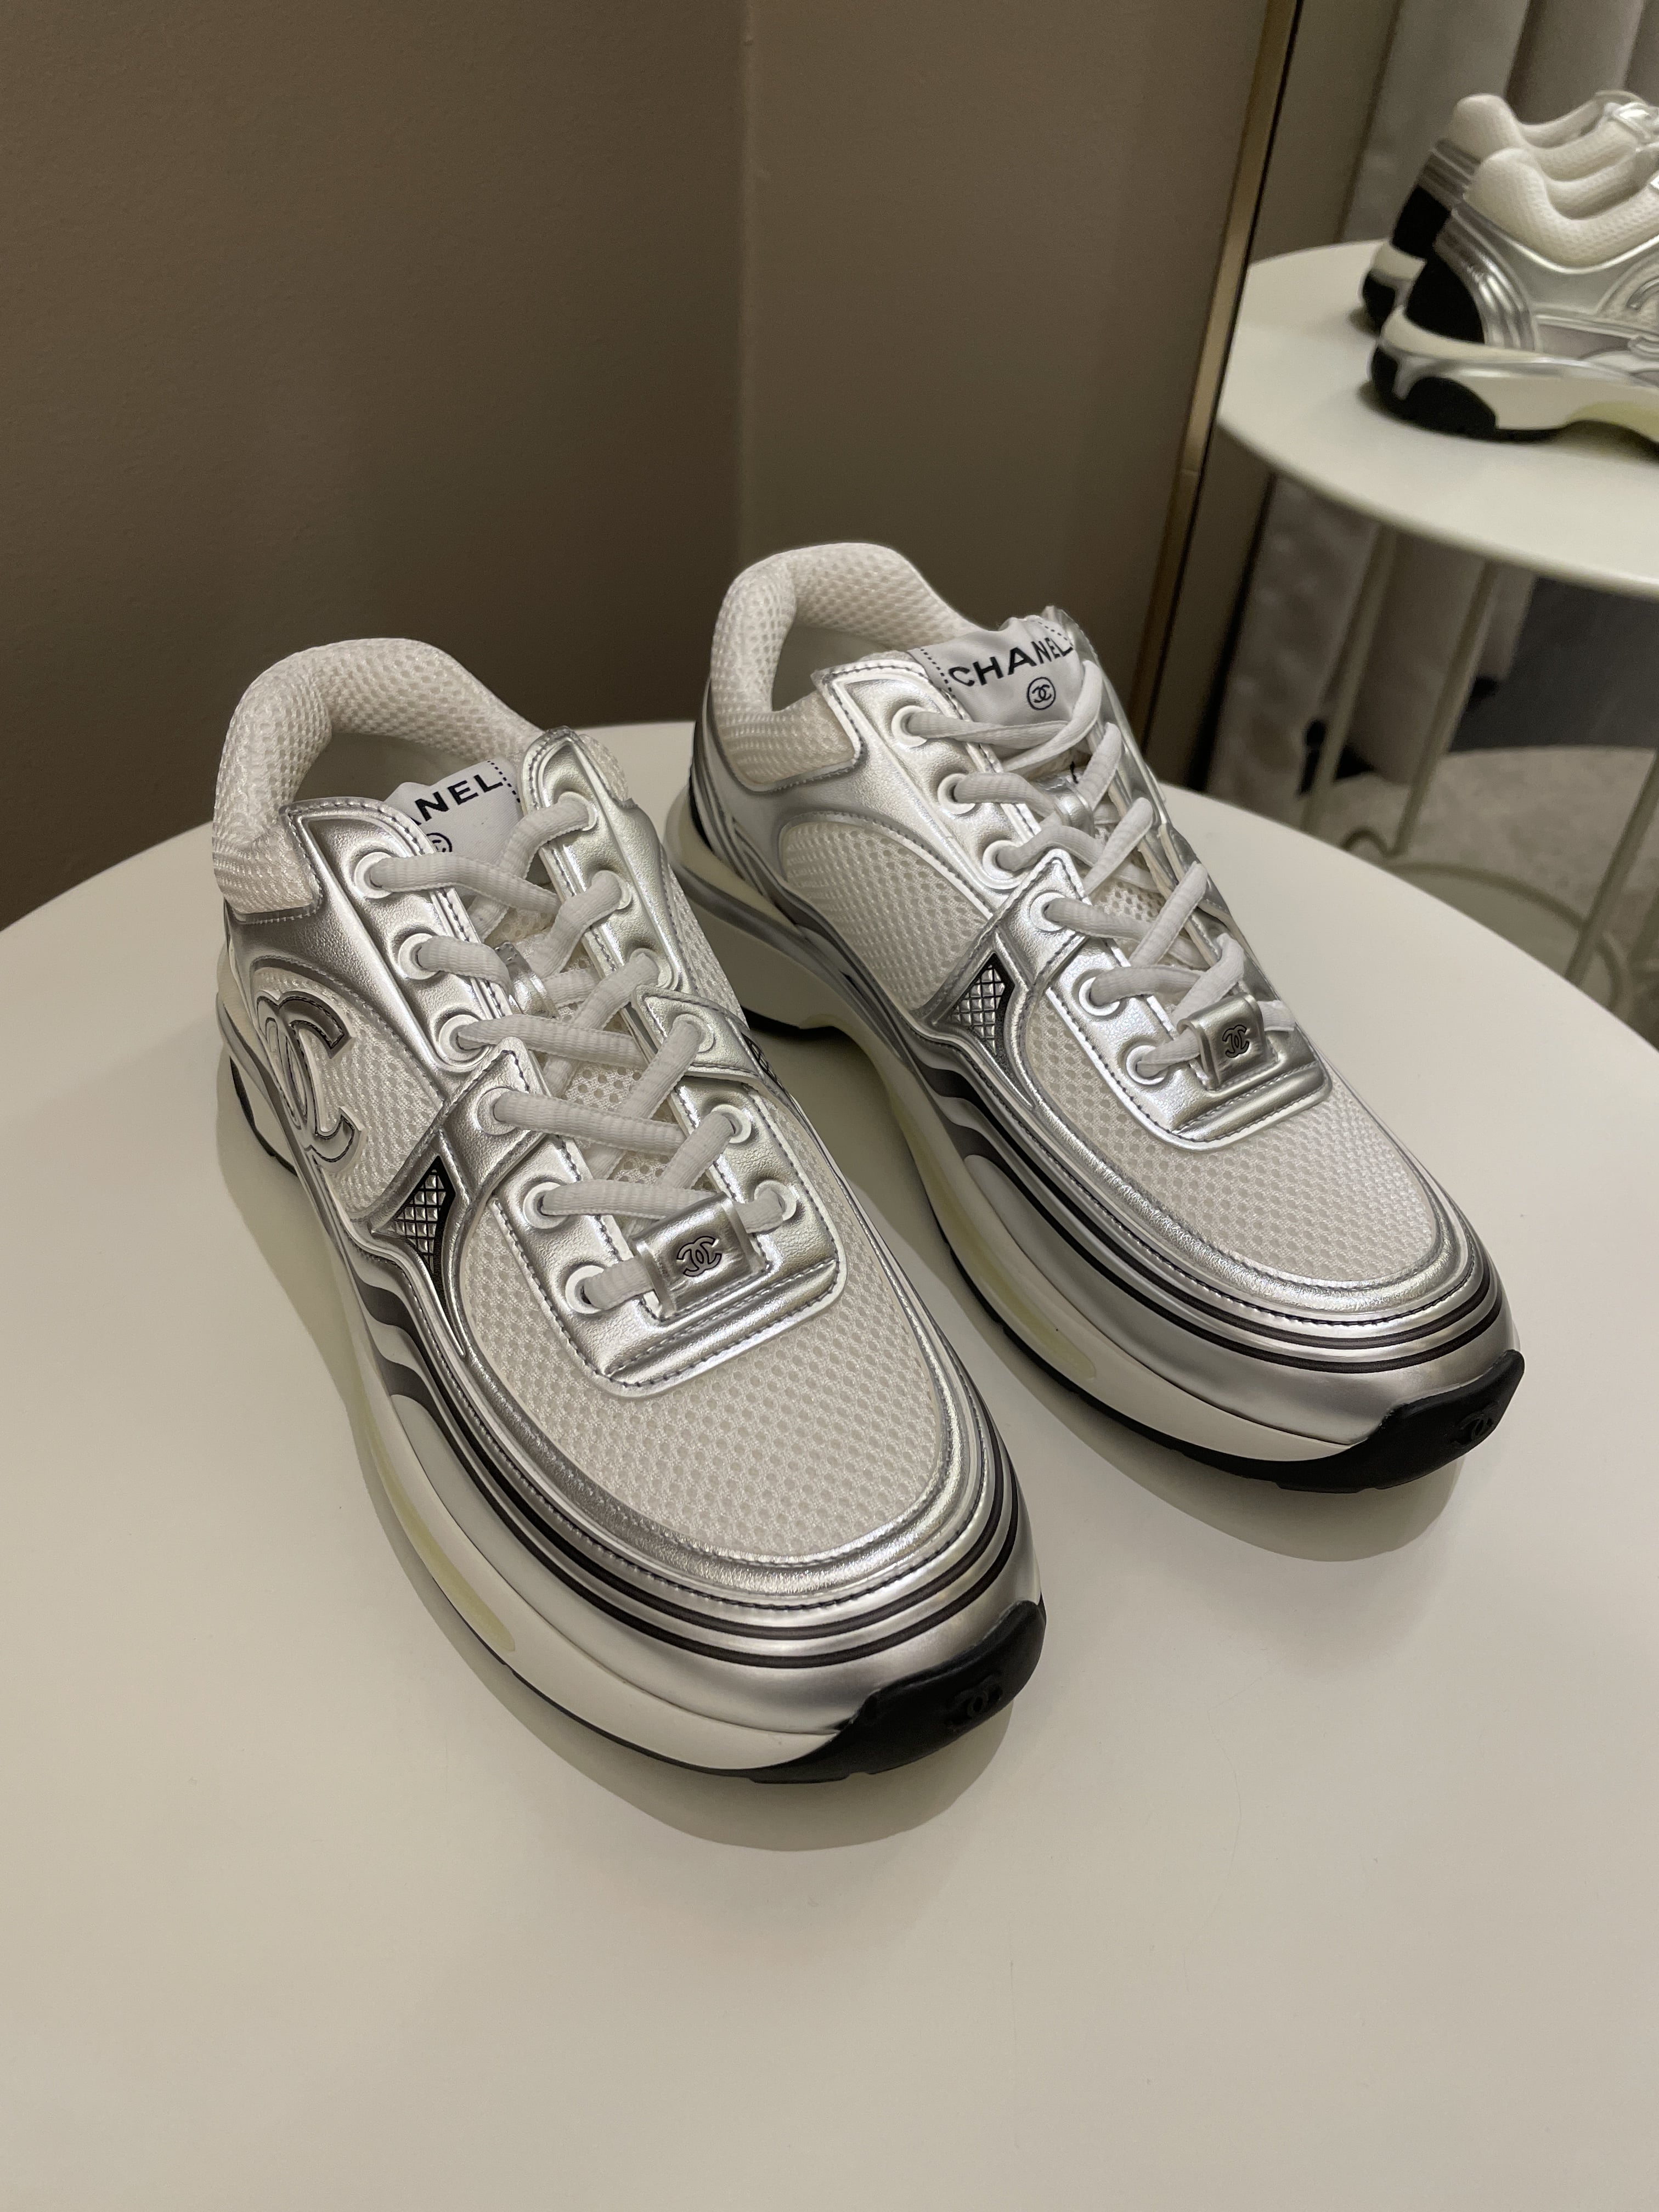 Chanel 23C Sneaker
Silver Size 40